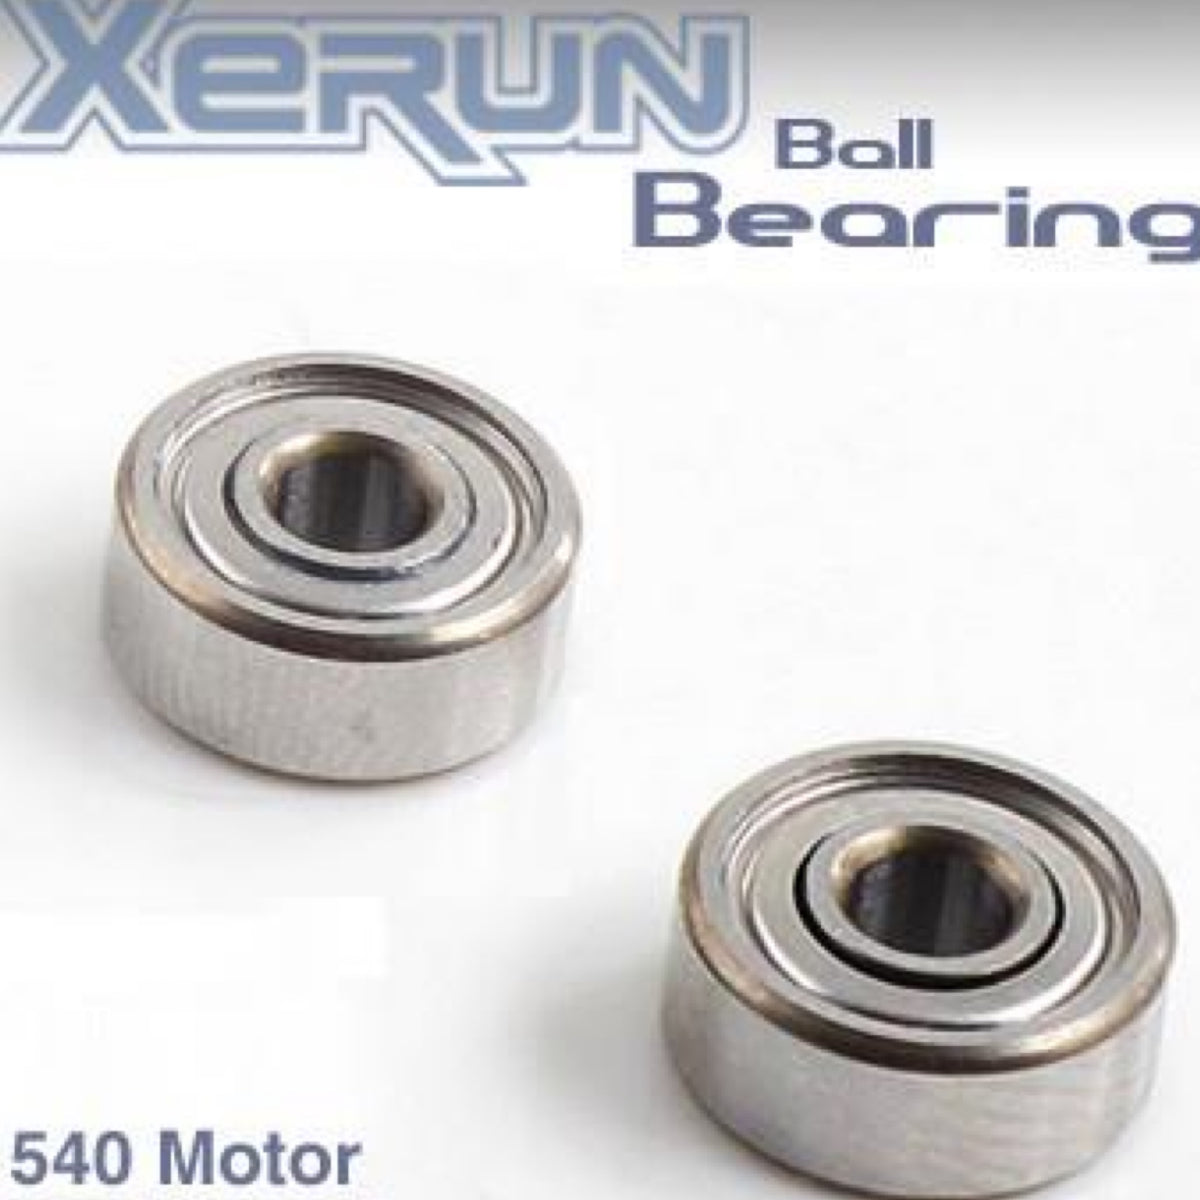 Ball Bearing for 540 Motor